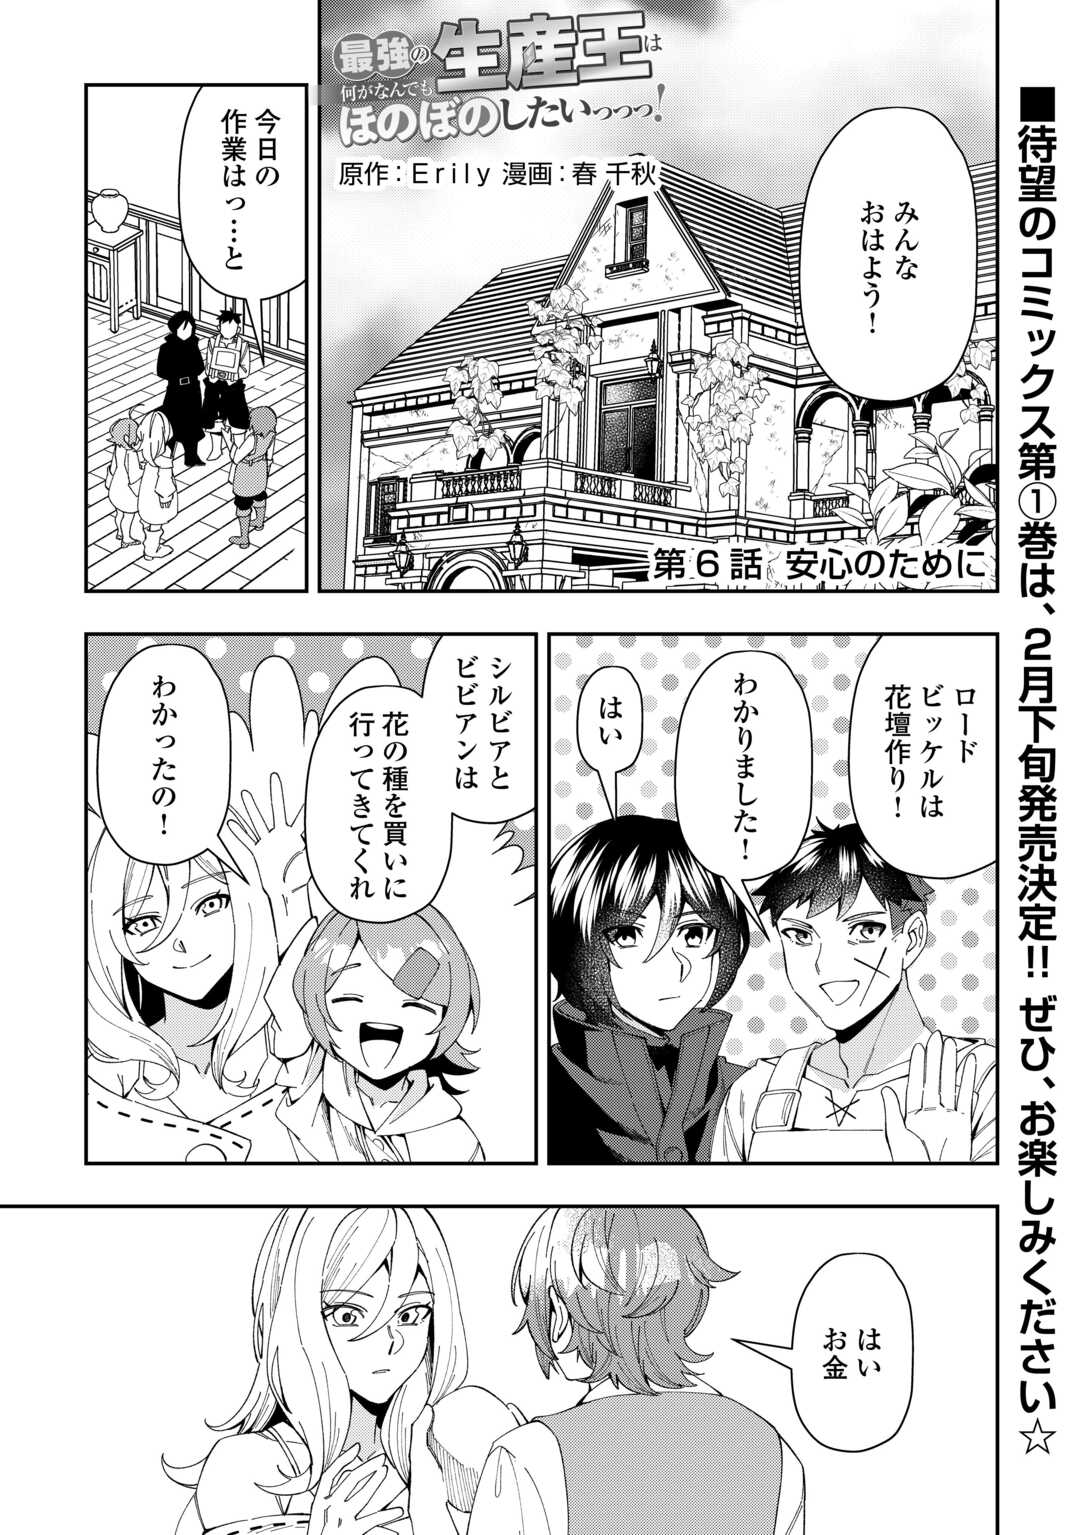 Saikyou no Seisan Ou wa Nani ga Nandemo Honobono Shitaiiii! - Chapter 6 - Page 1